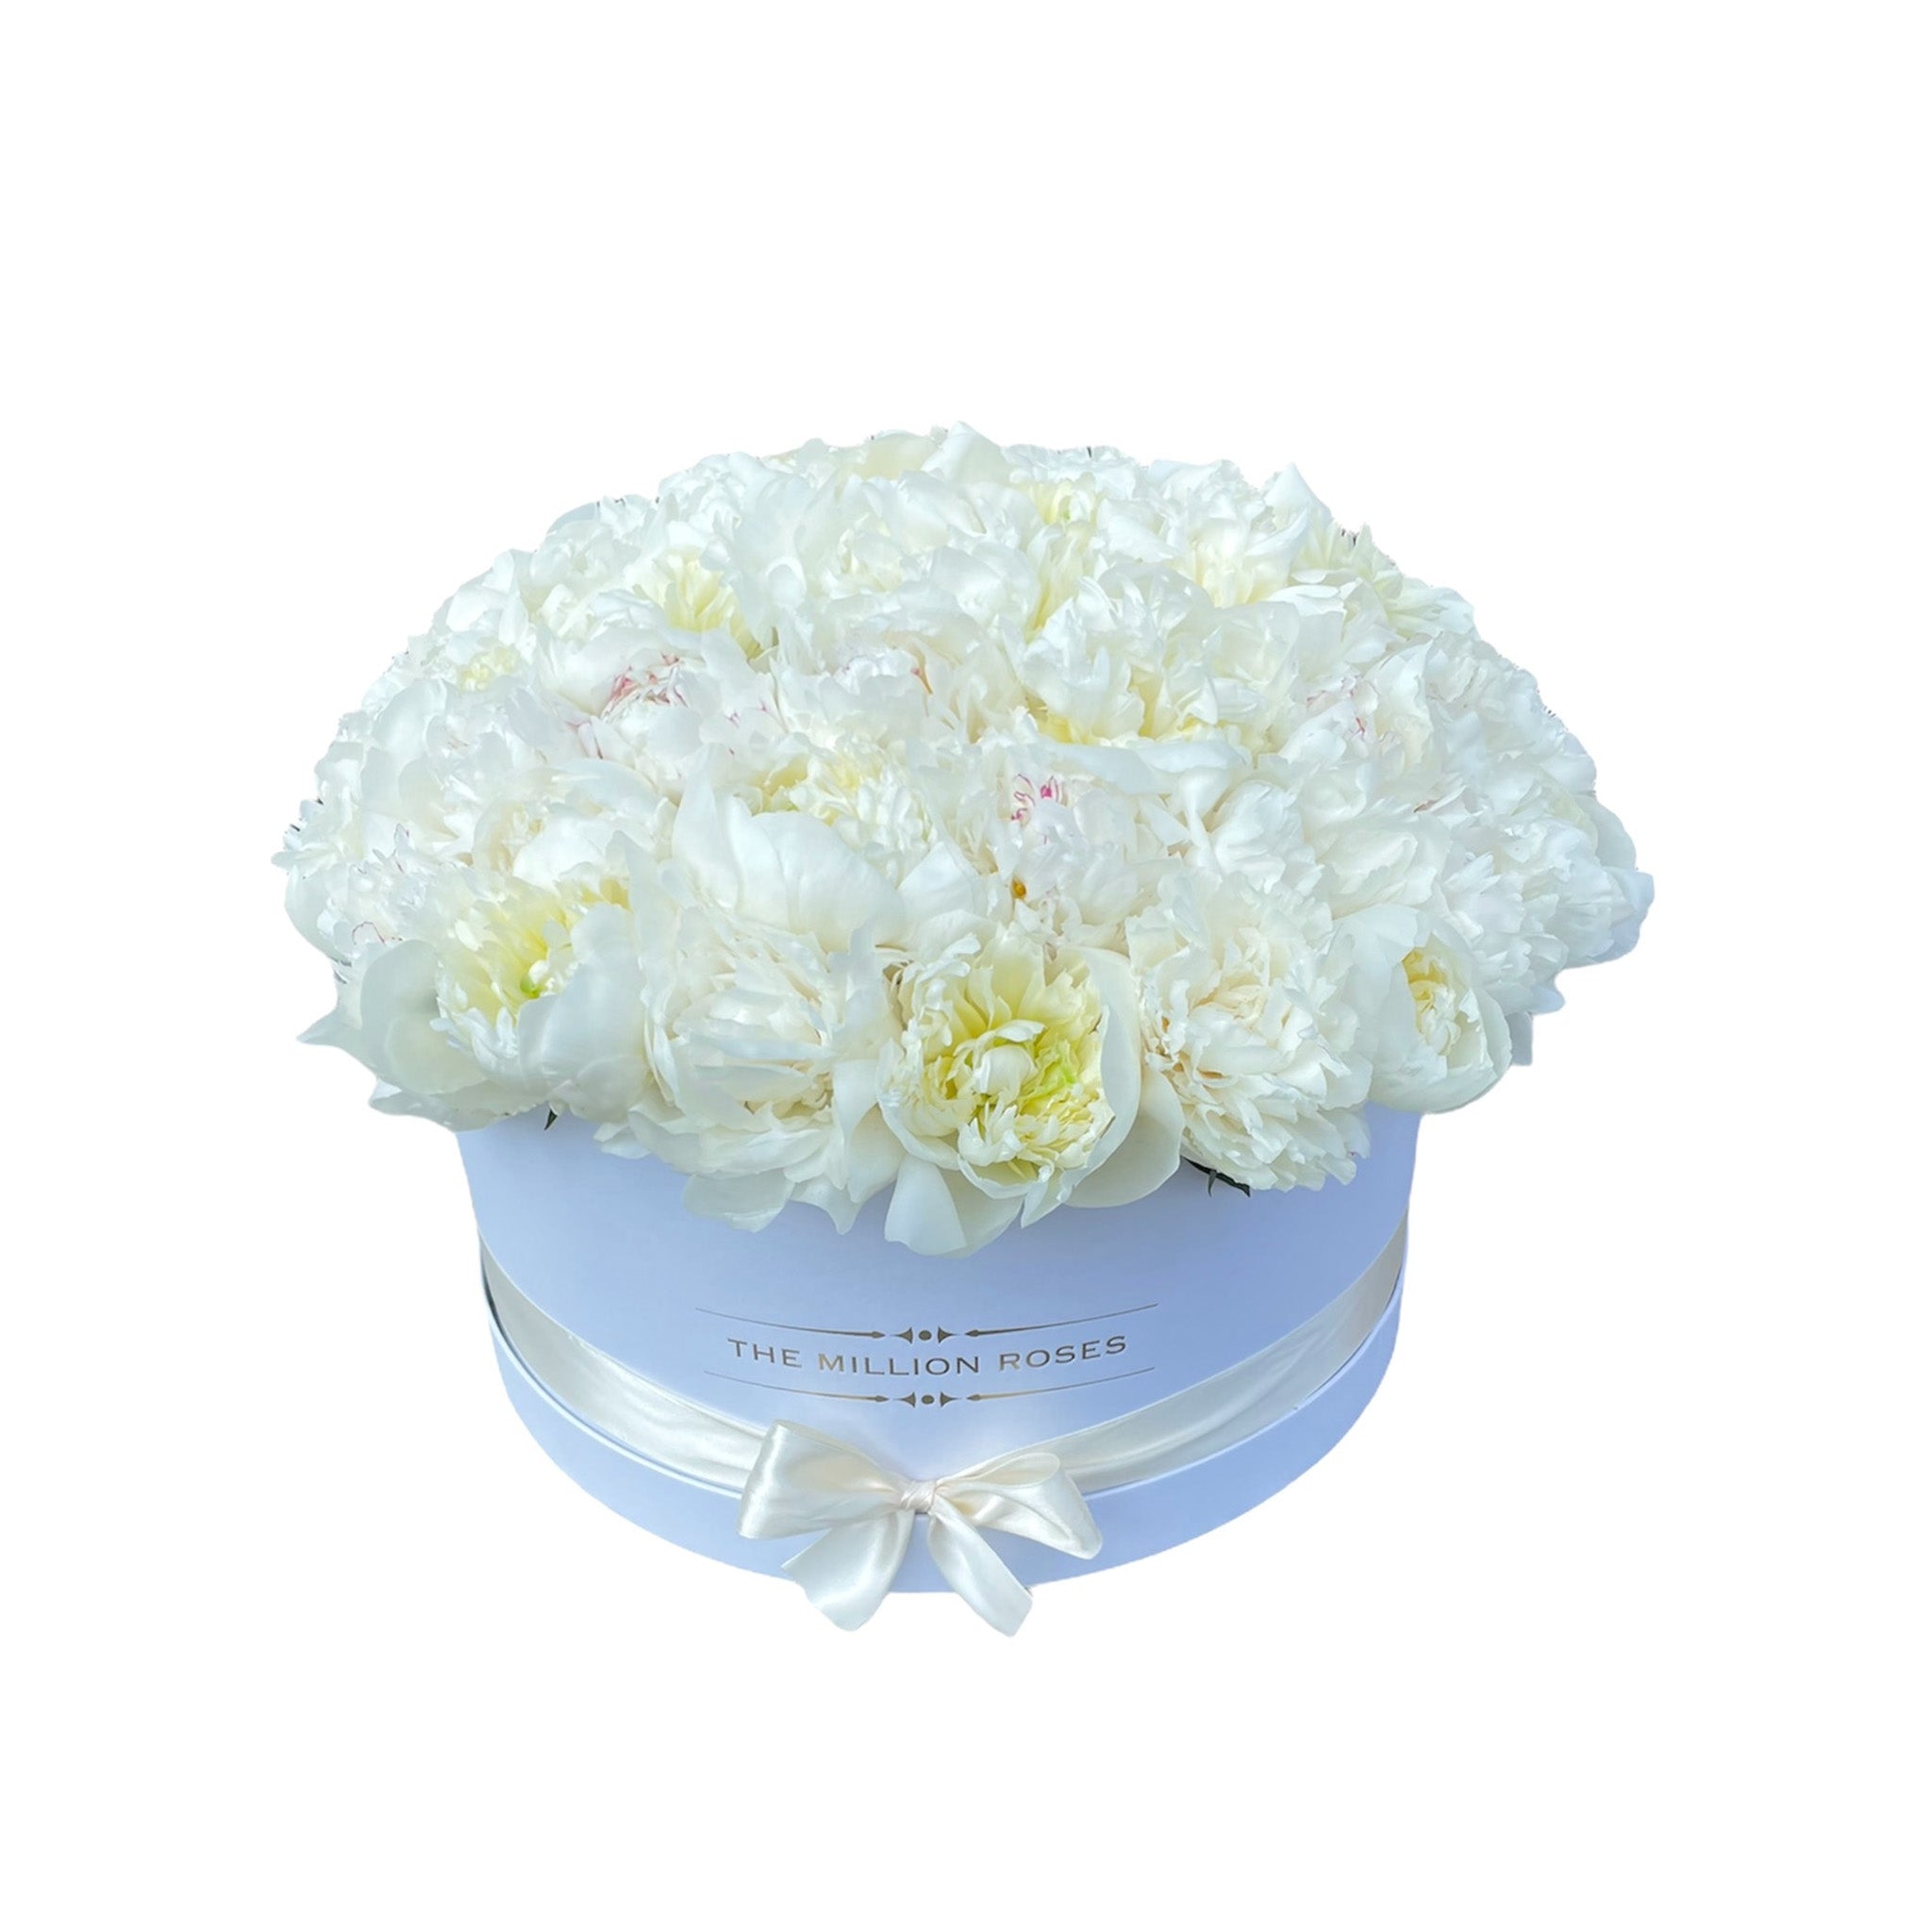 Heaven on earth - Buchet de Bujori albe parfumate in cutie luxury